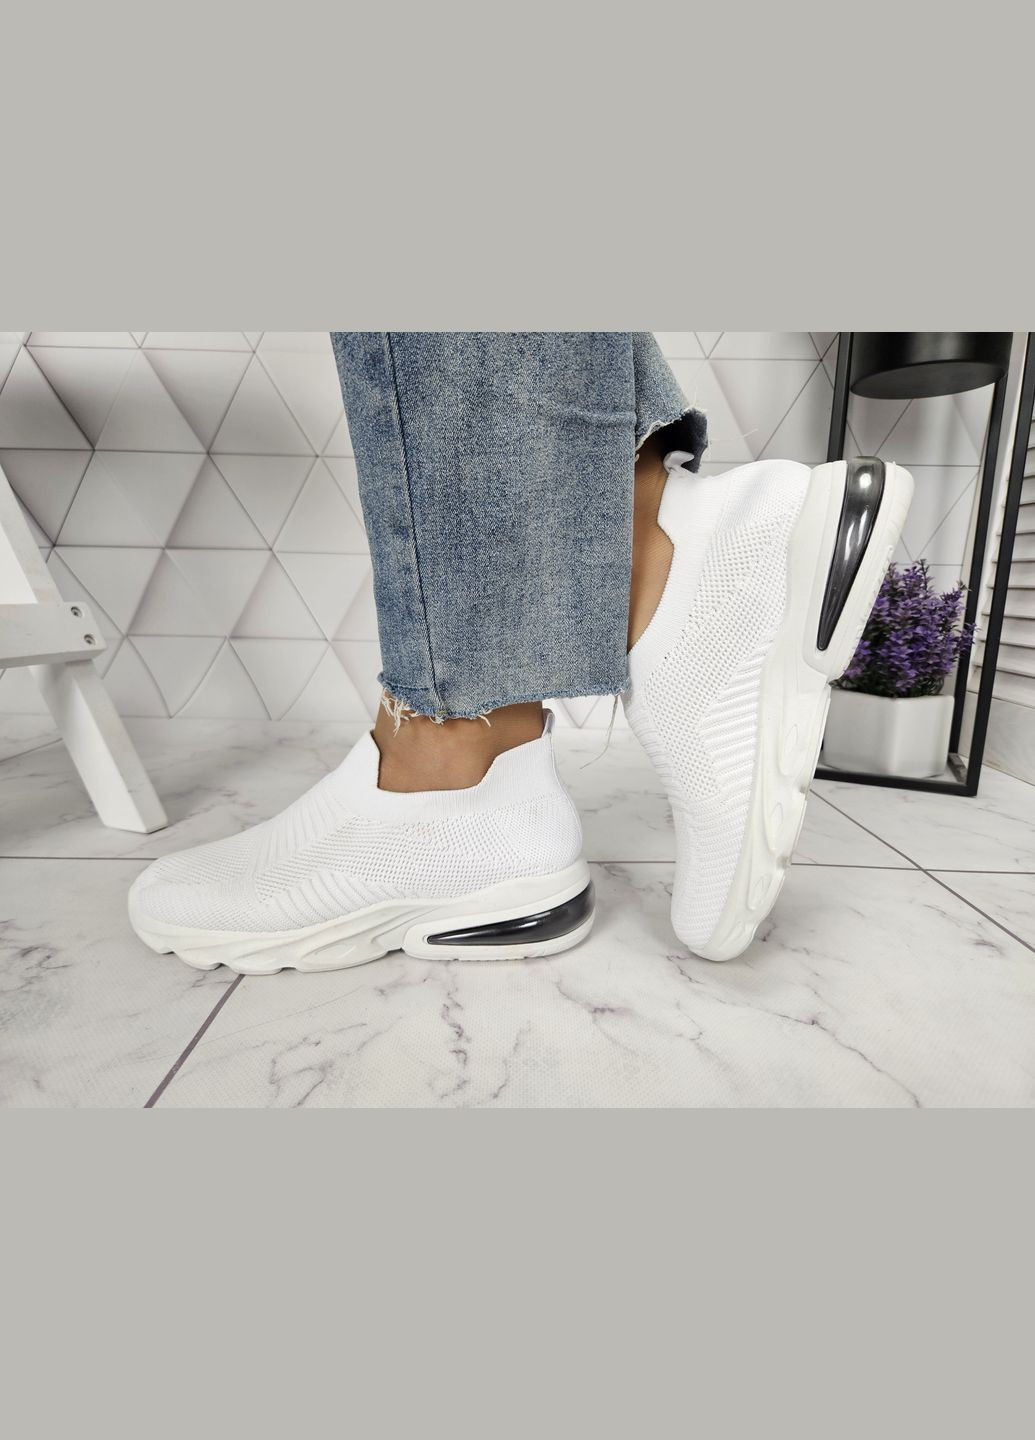 Белые летние кроссовки легкие текстильные белые с компенсатором (24,5 см) sp-2893 No Brand